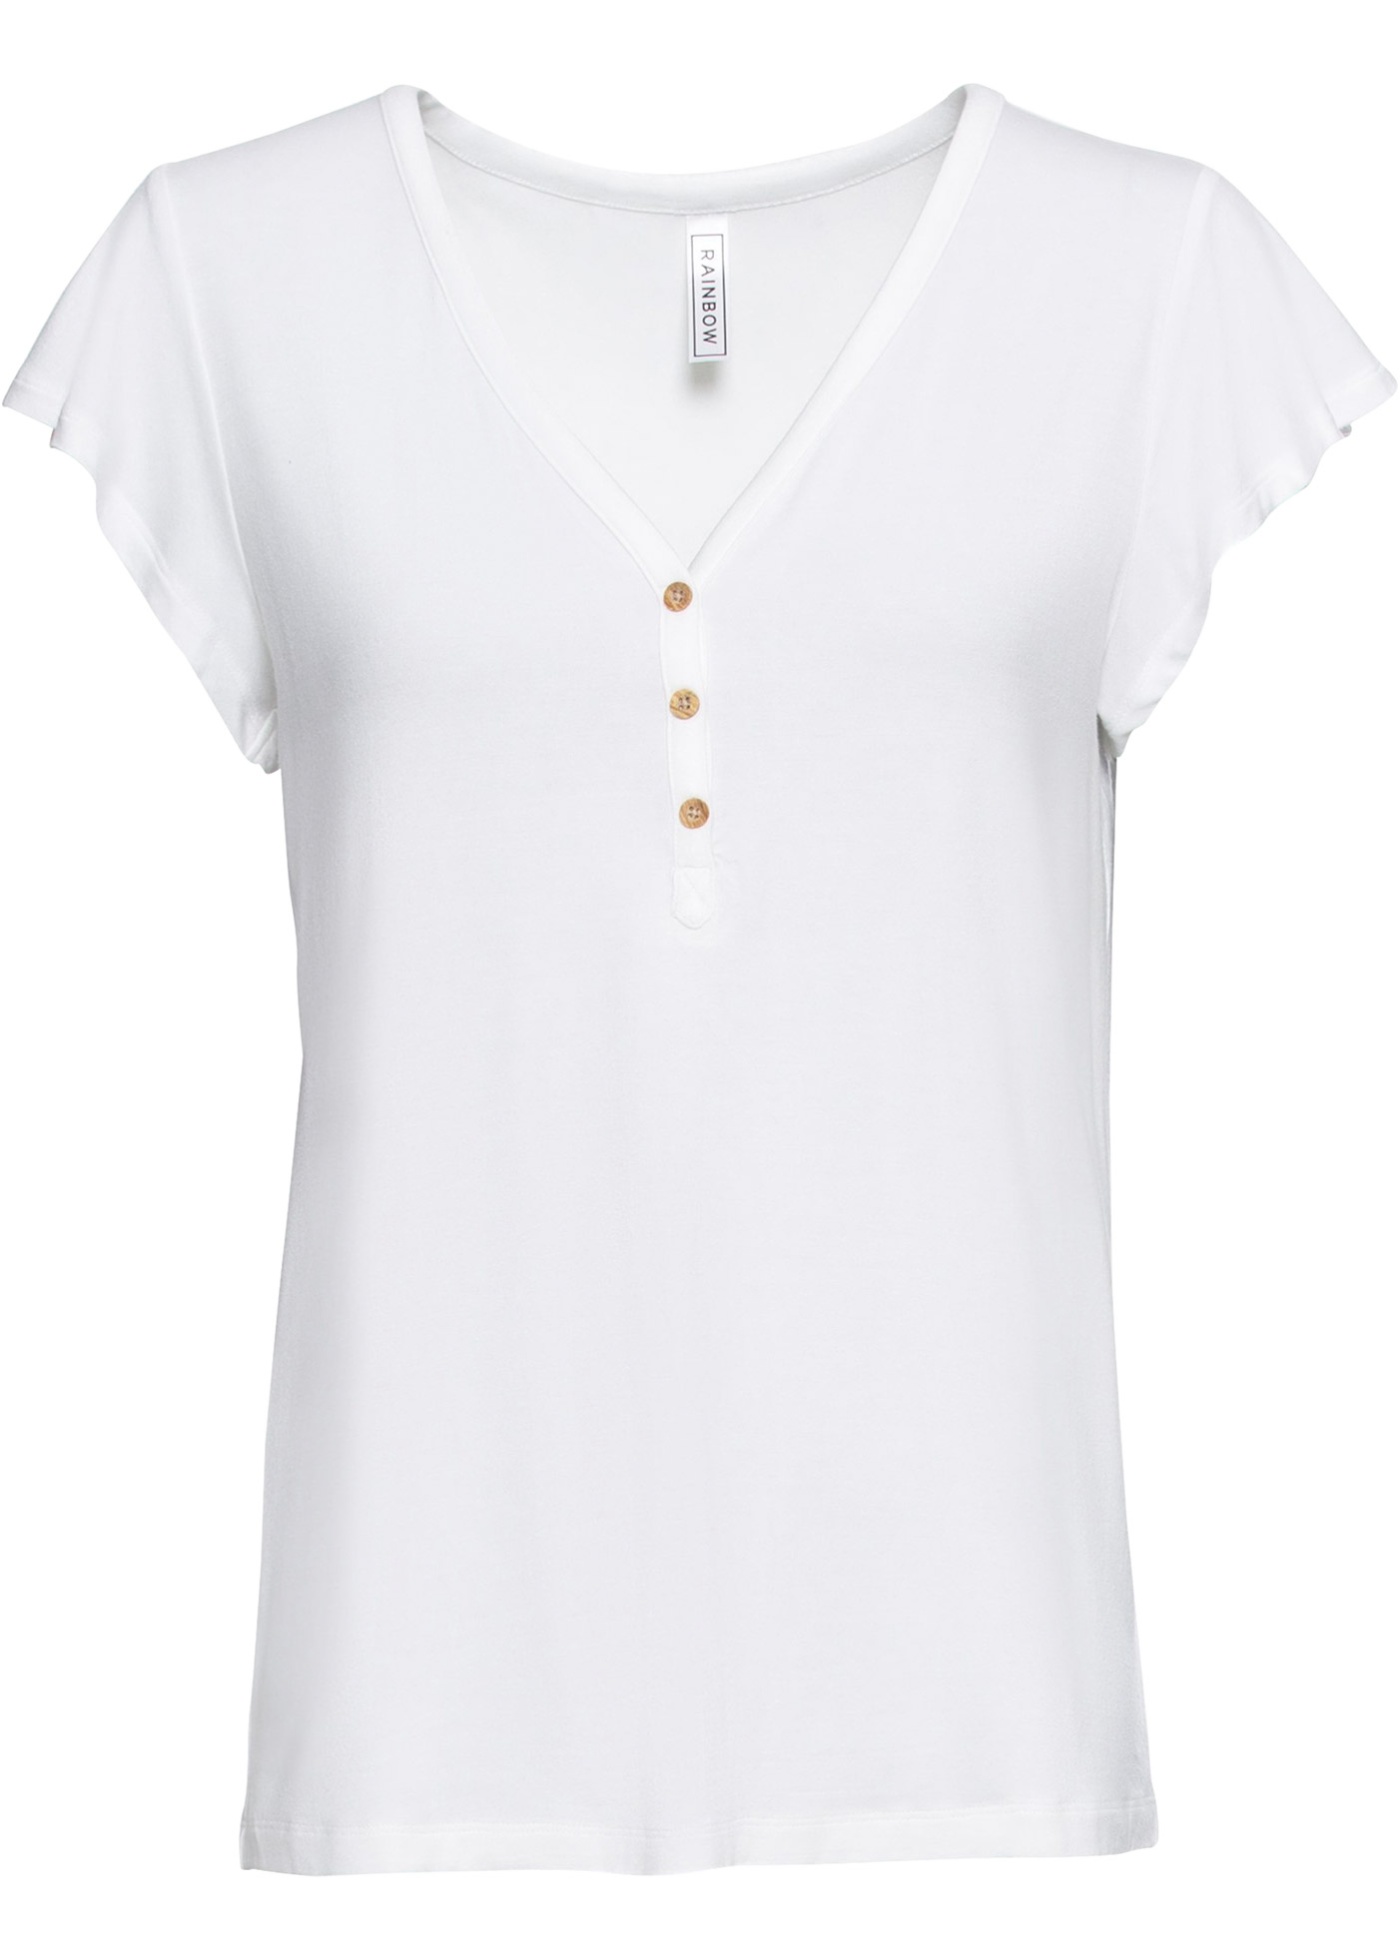 Luftige Shirtbluse mit V-Ausschnitt (91127781) in weiß